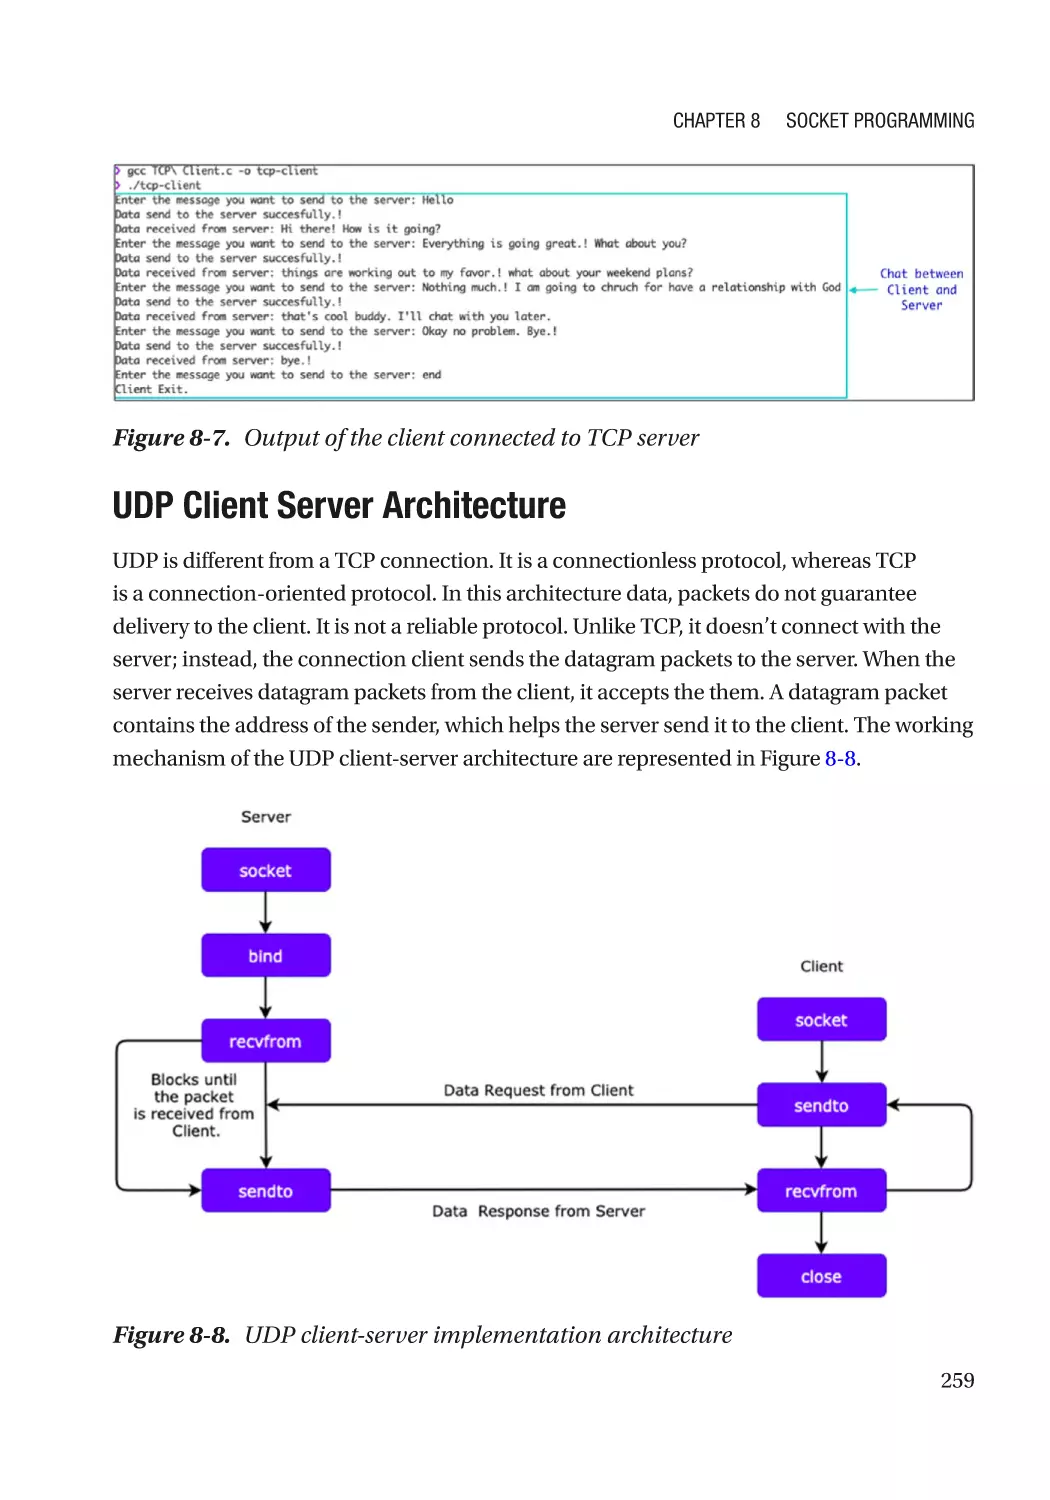 UDP Client Server Architecture